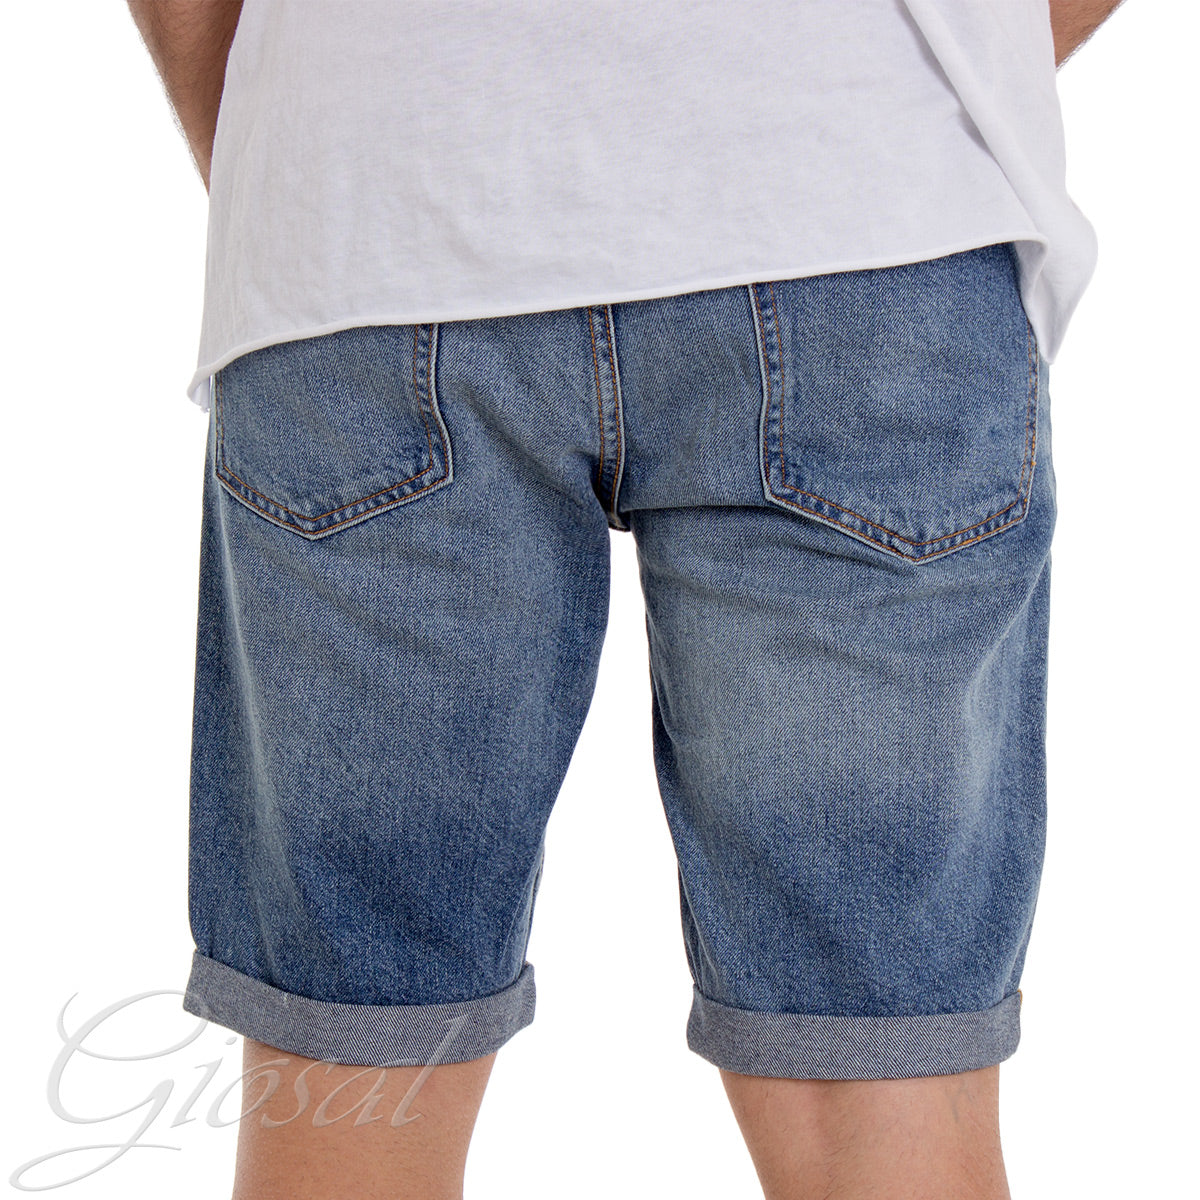 Bermuda Pantaloncino Corto Uomo Cinque Tasche Stampa GIOSAL-PC1307A